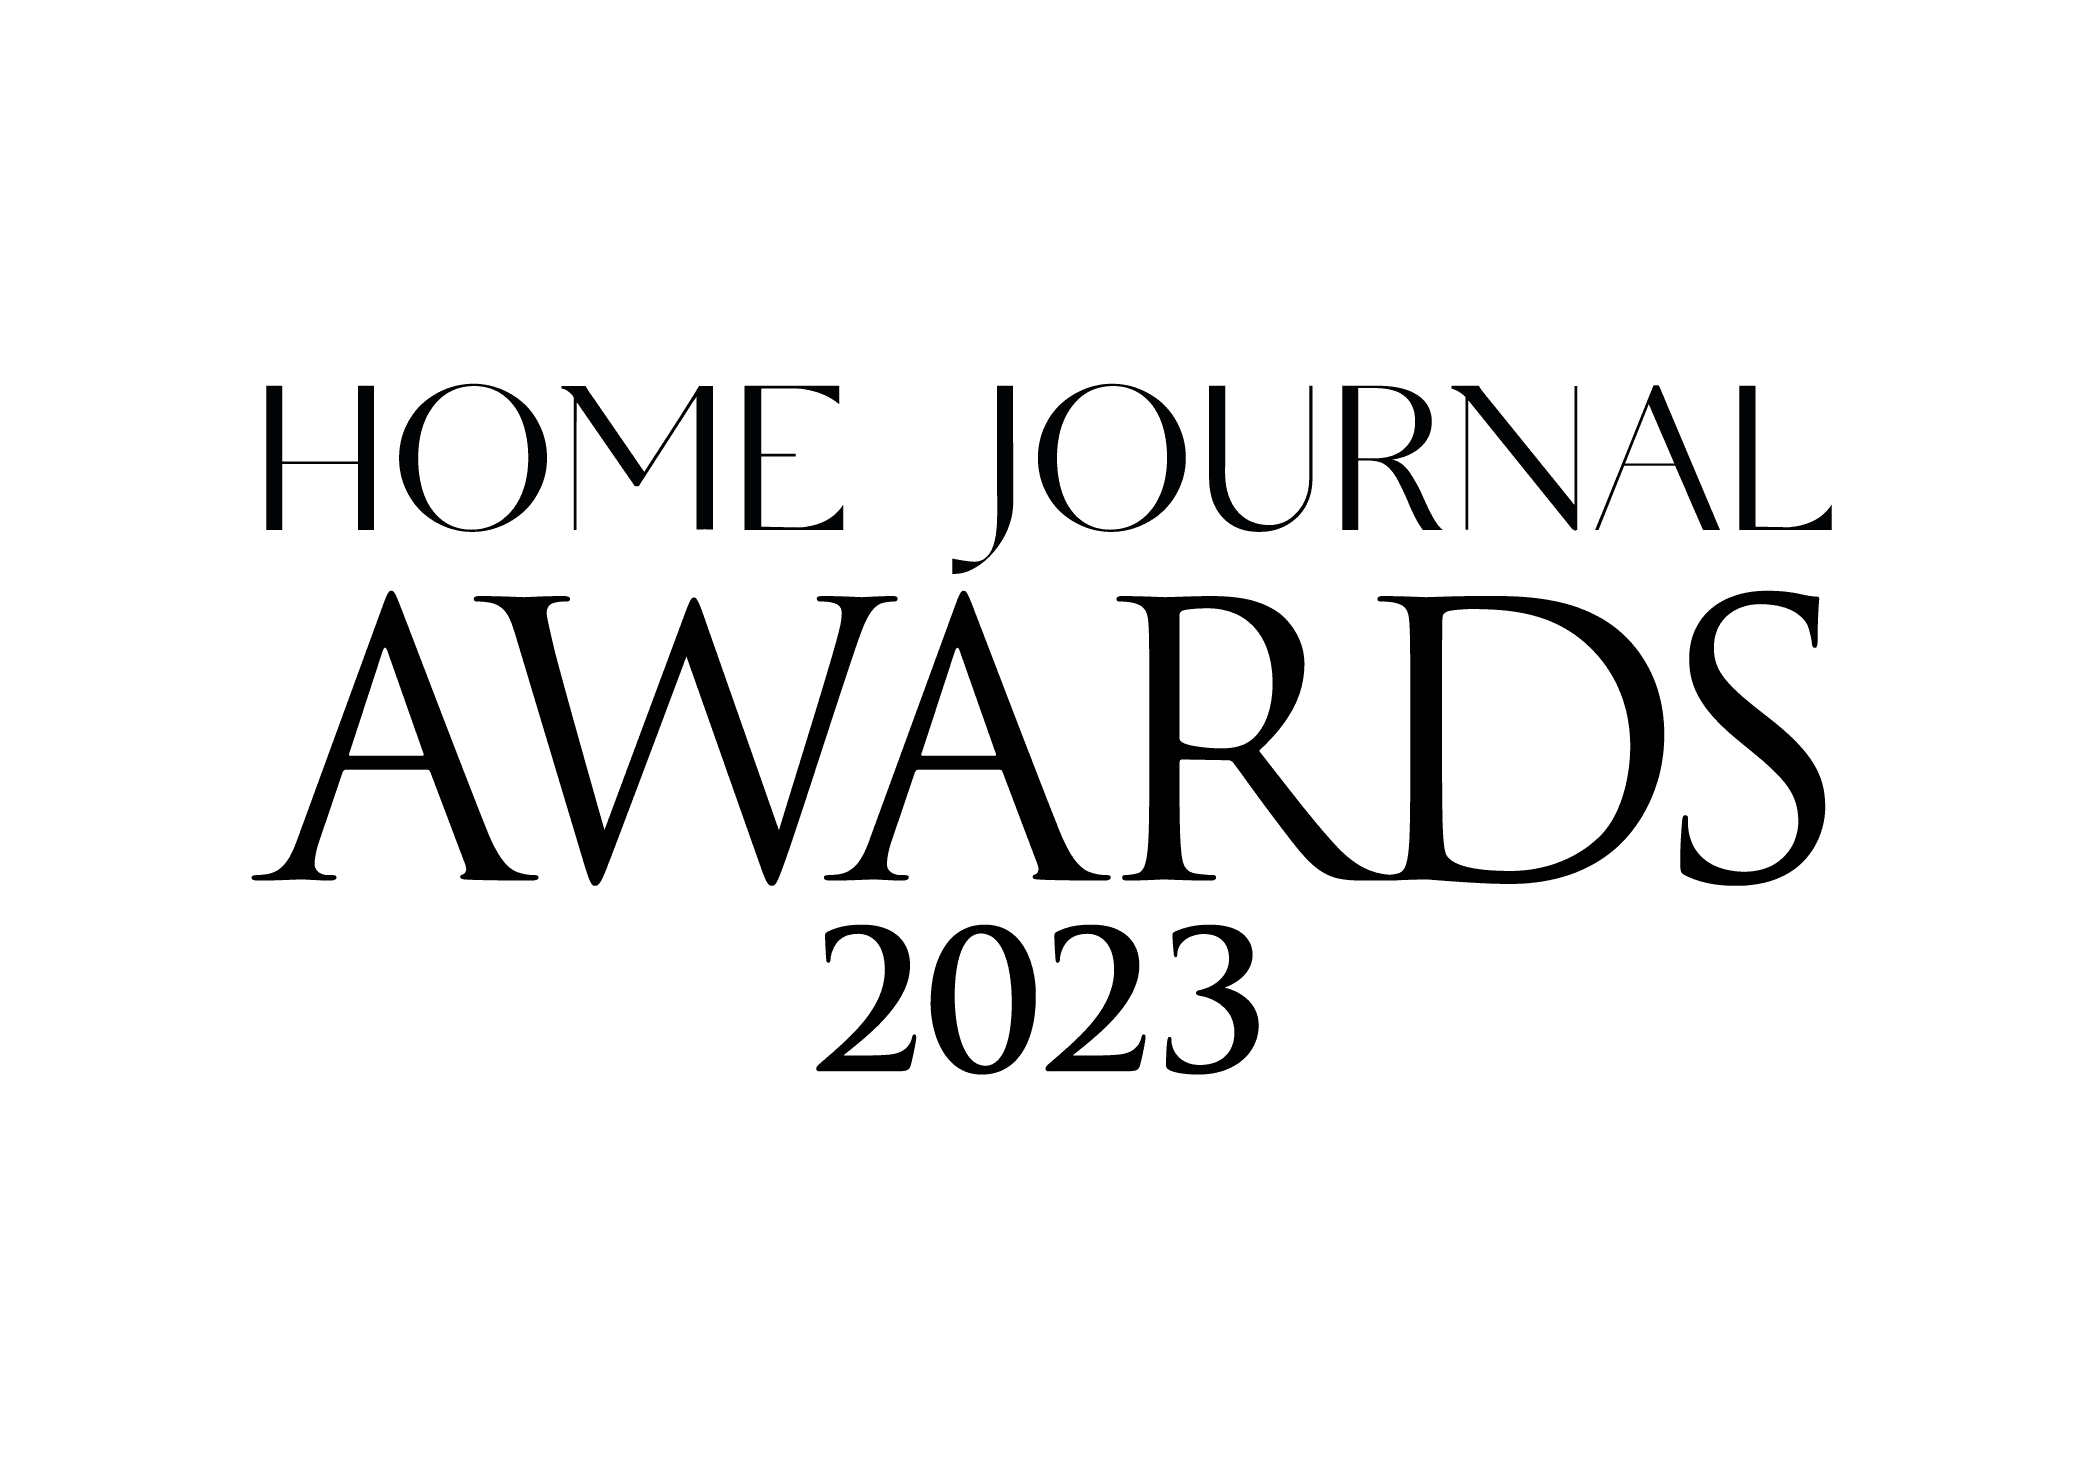 HJ Awards 2023 Watermark Logo_Offical HJ Awards 2023_Black